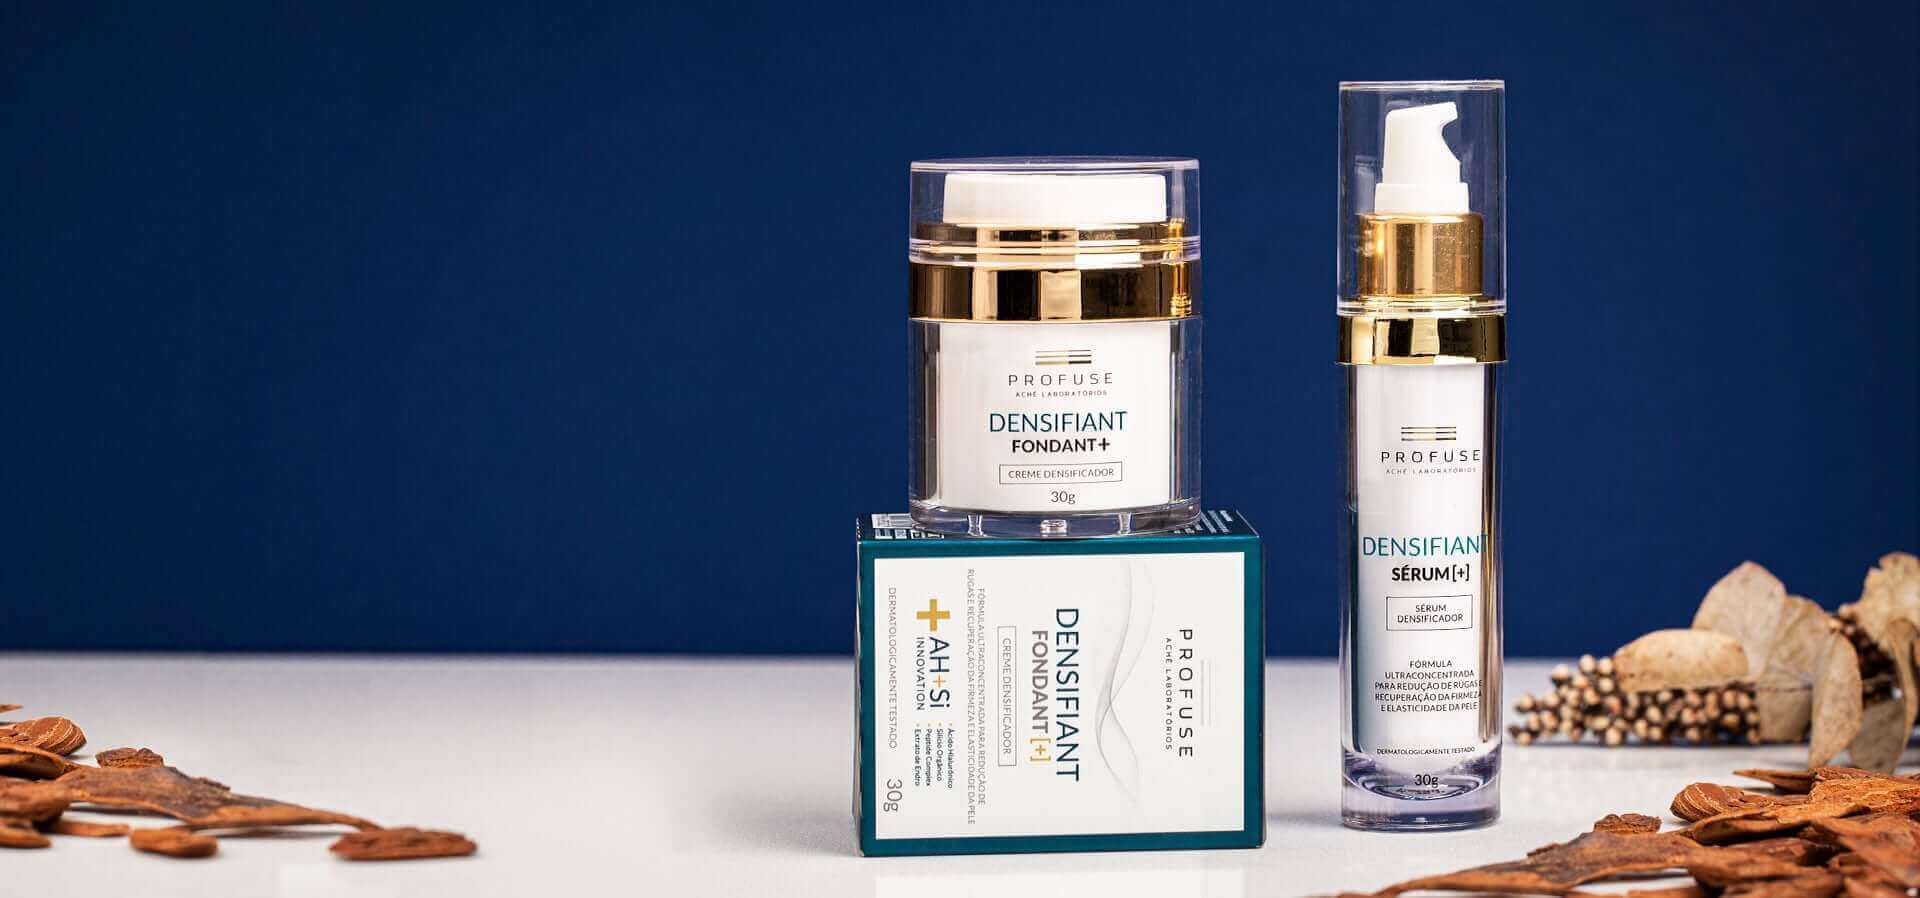 Imagem mostra dois produtos: Densifiant Fondant+ e Densifiant Sérum+ em um fundo azul